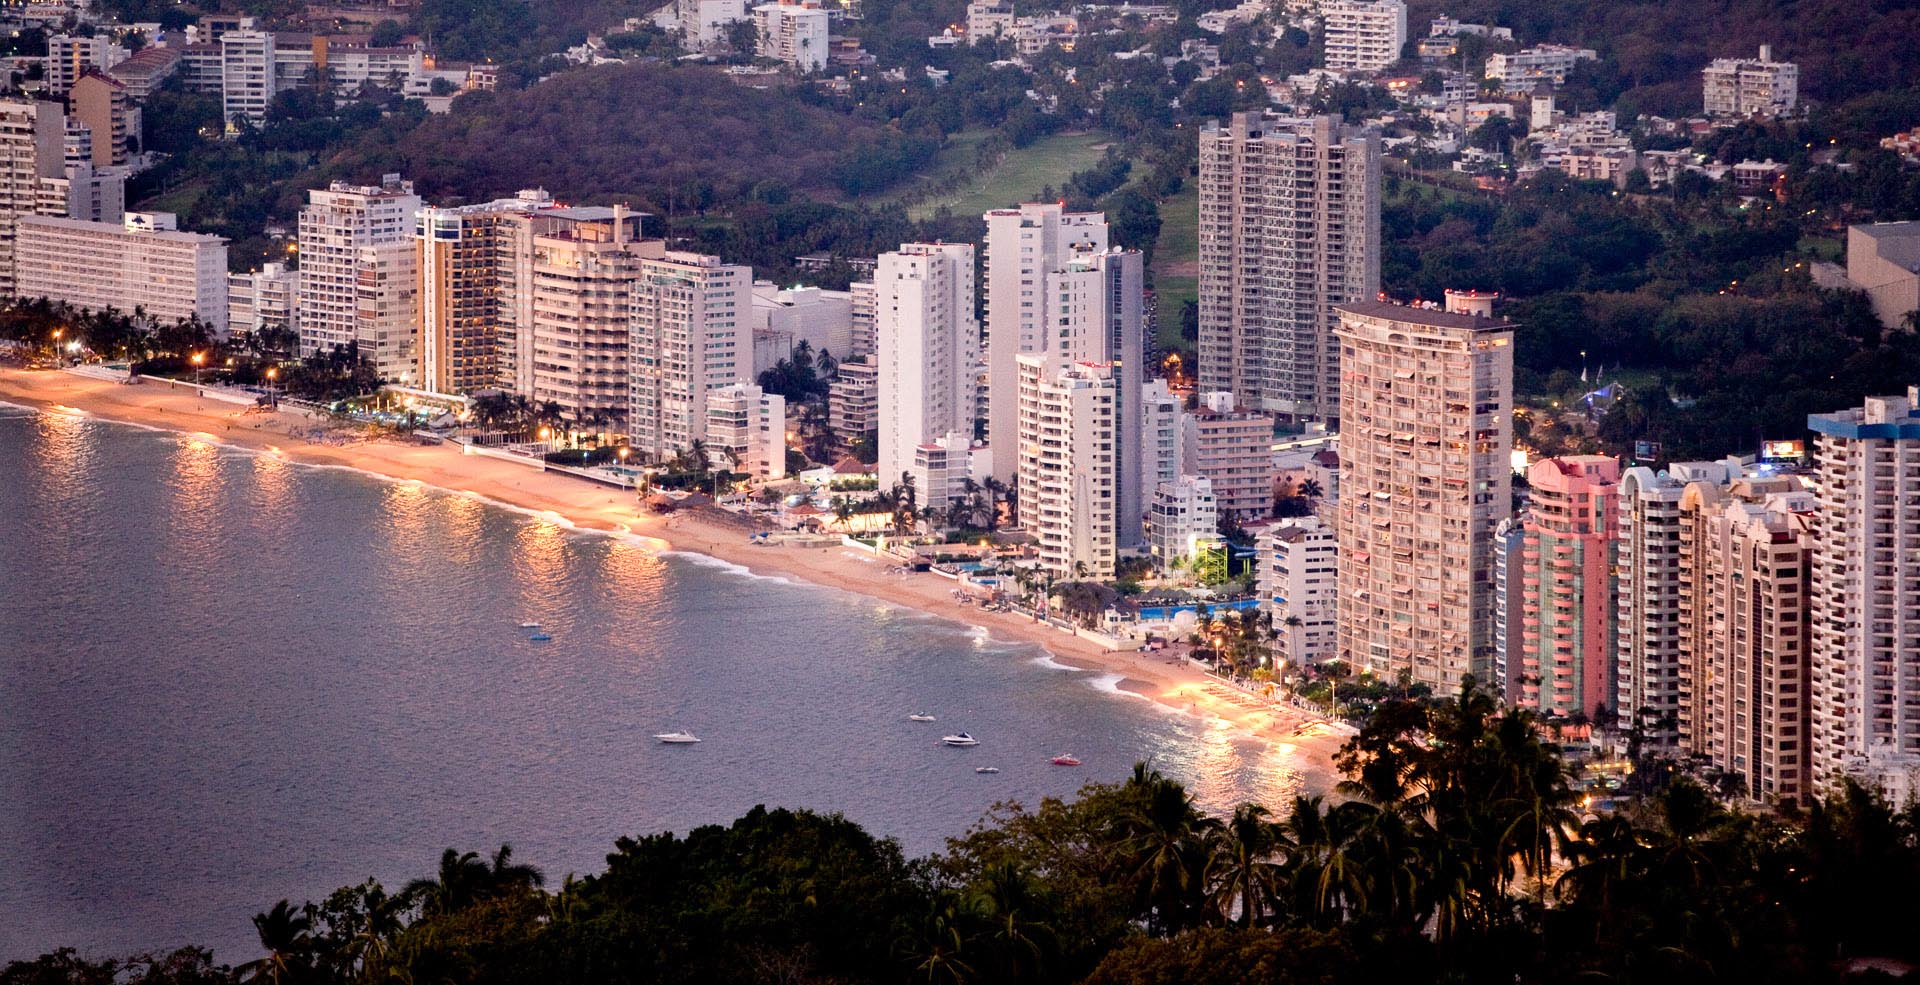 Acapulco Guerrero